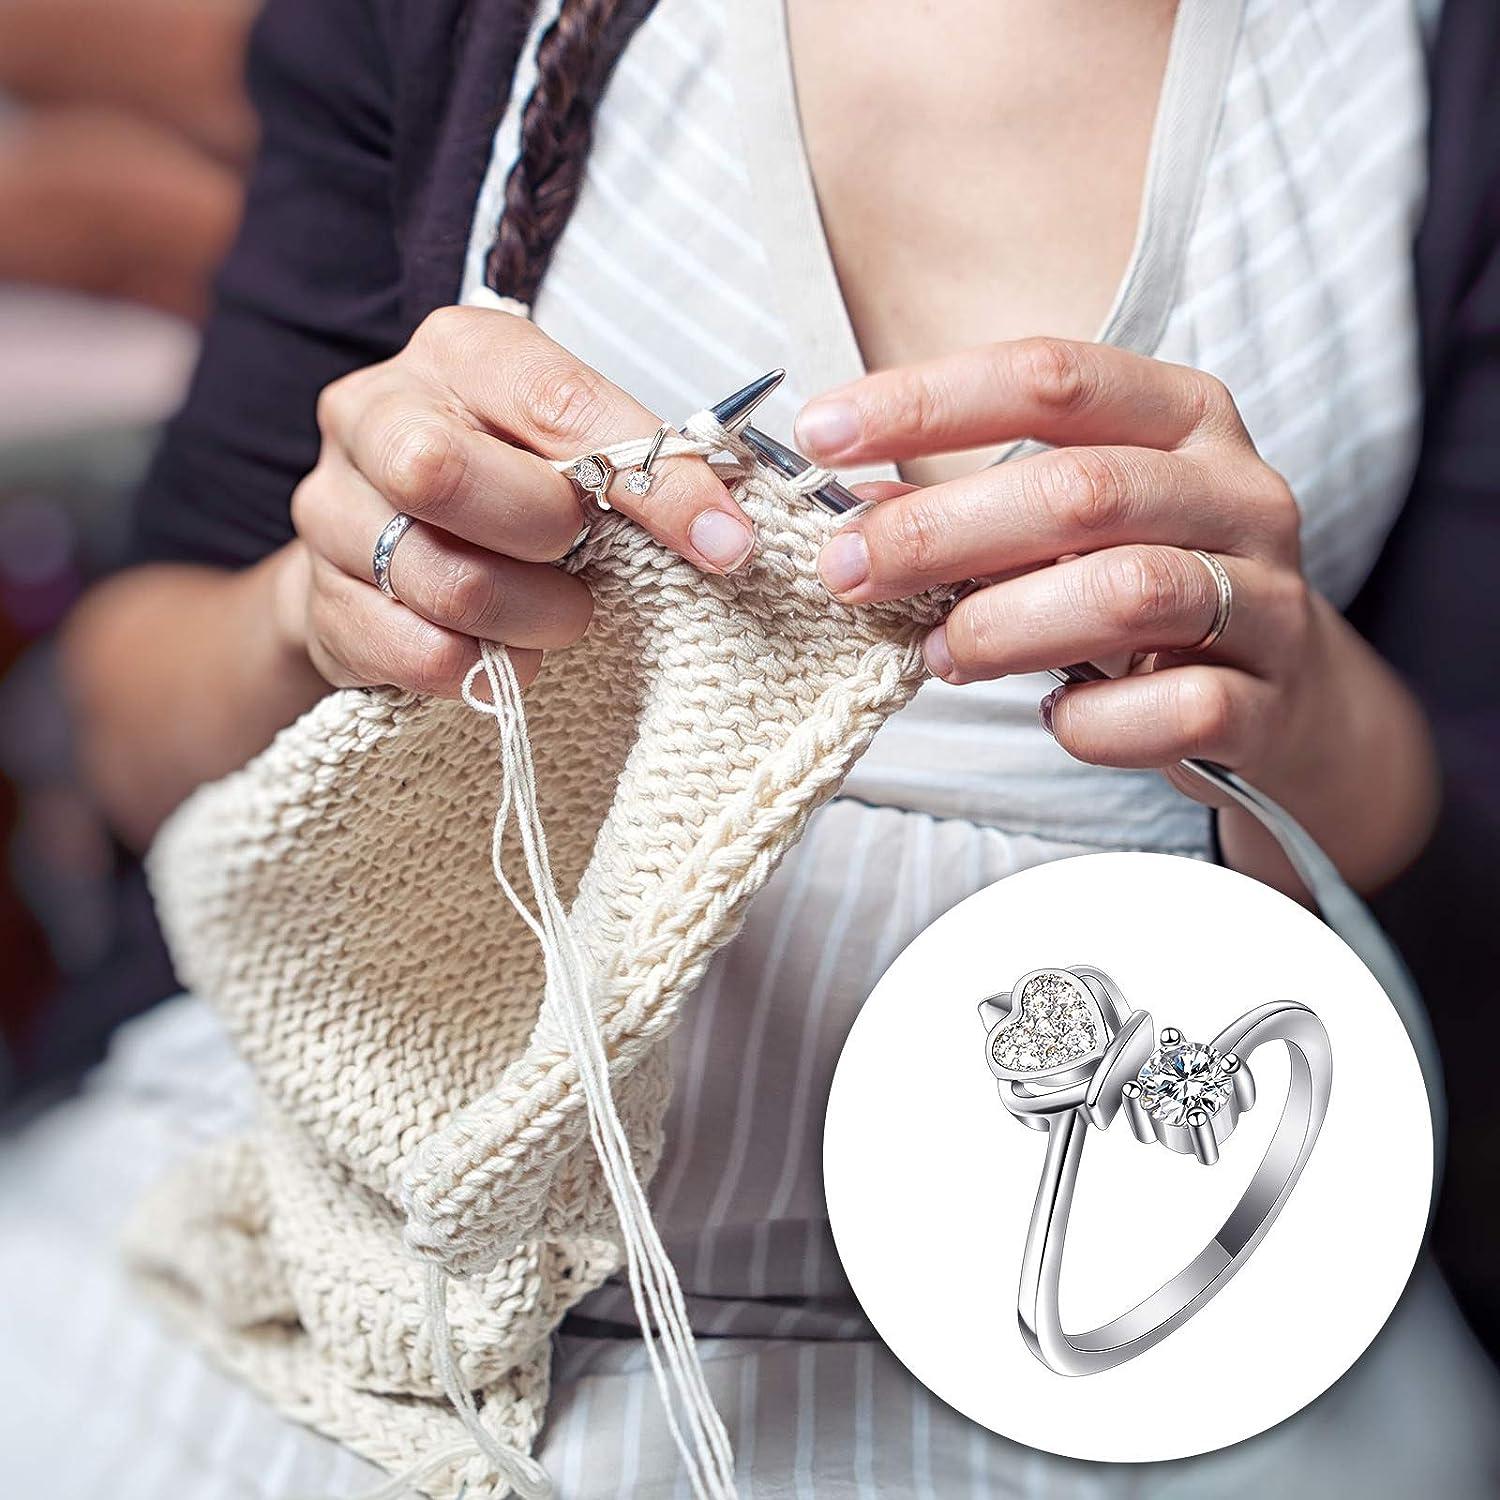 Adjustable Knitting Loop Crochet Loop Knitting Accessories, Hand